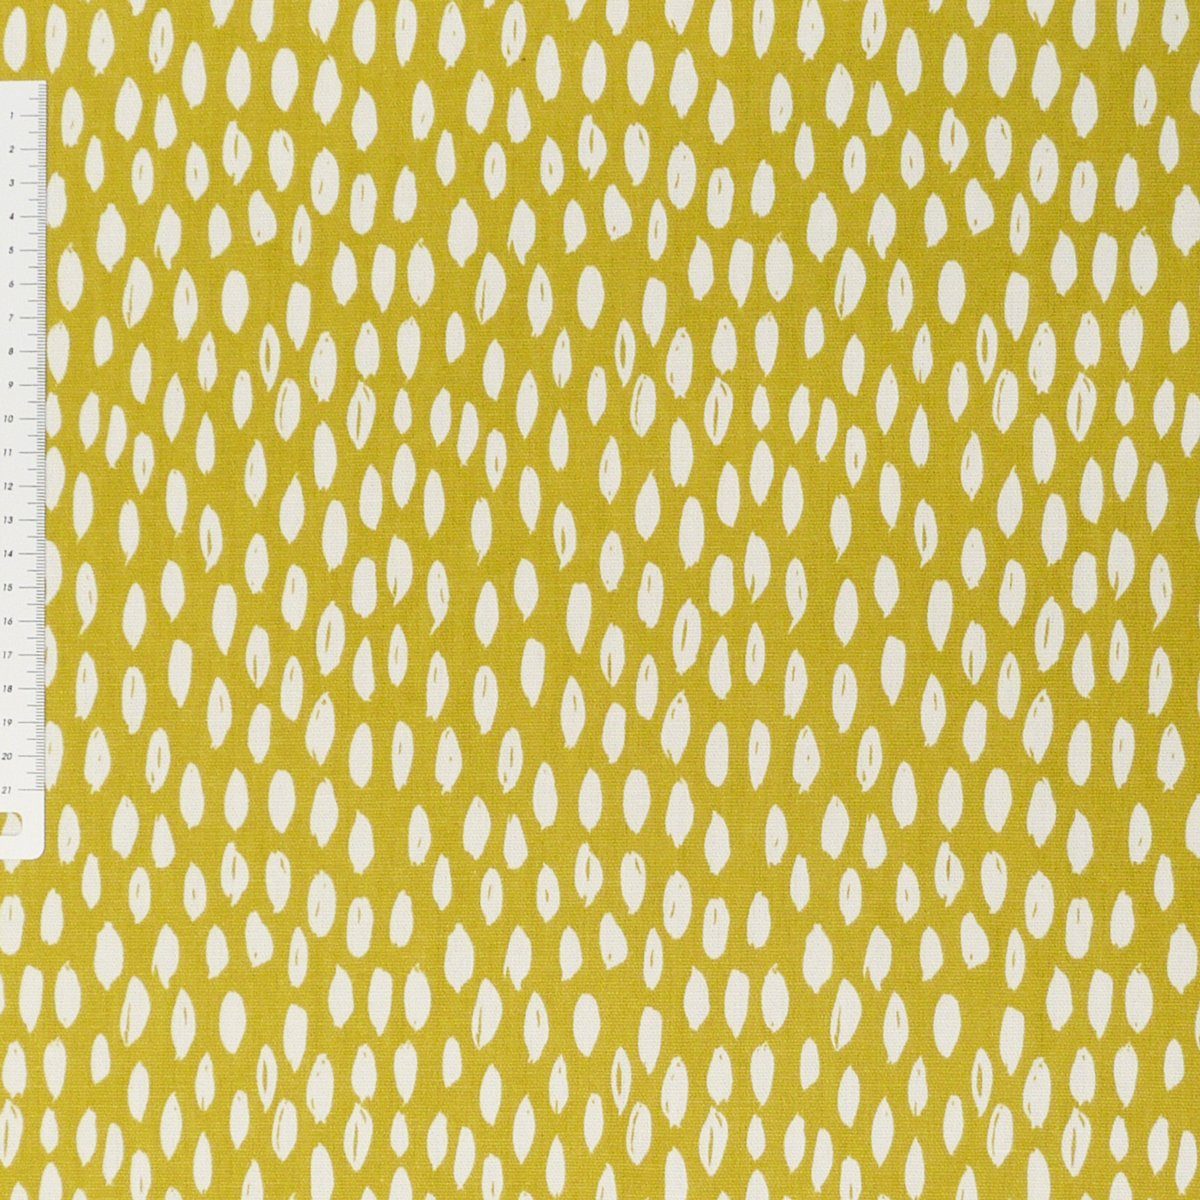 SCHÖNER LEBEN. Tischläufer Schöner Leben gelb weiß handmade ocker Tischläufer 40x160cm, Bayside Honeydew